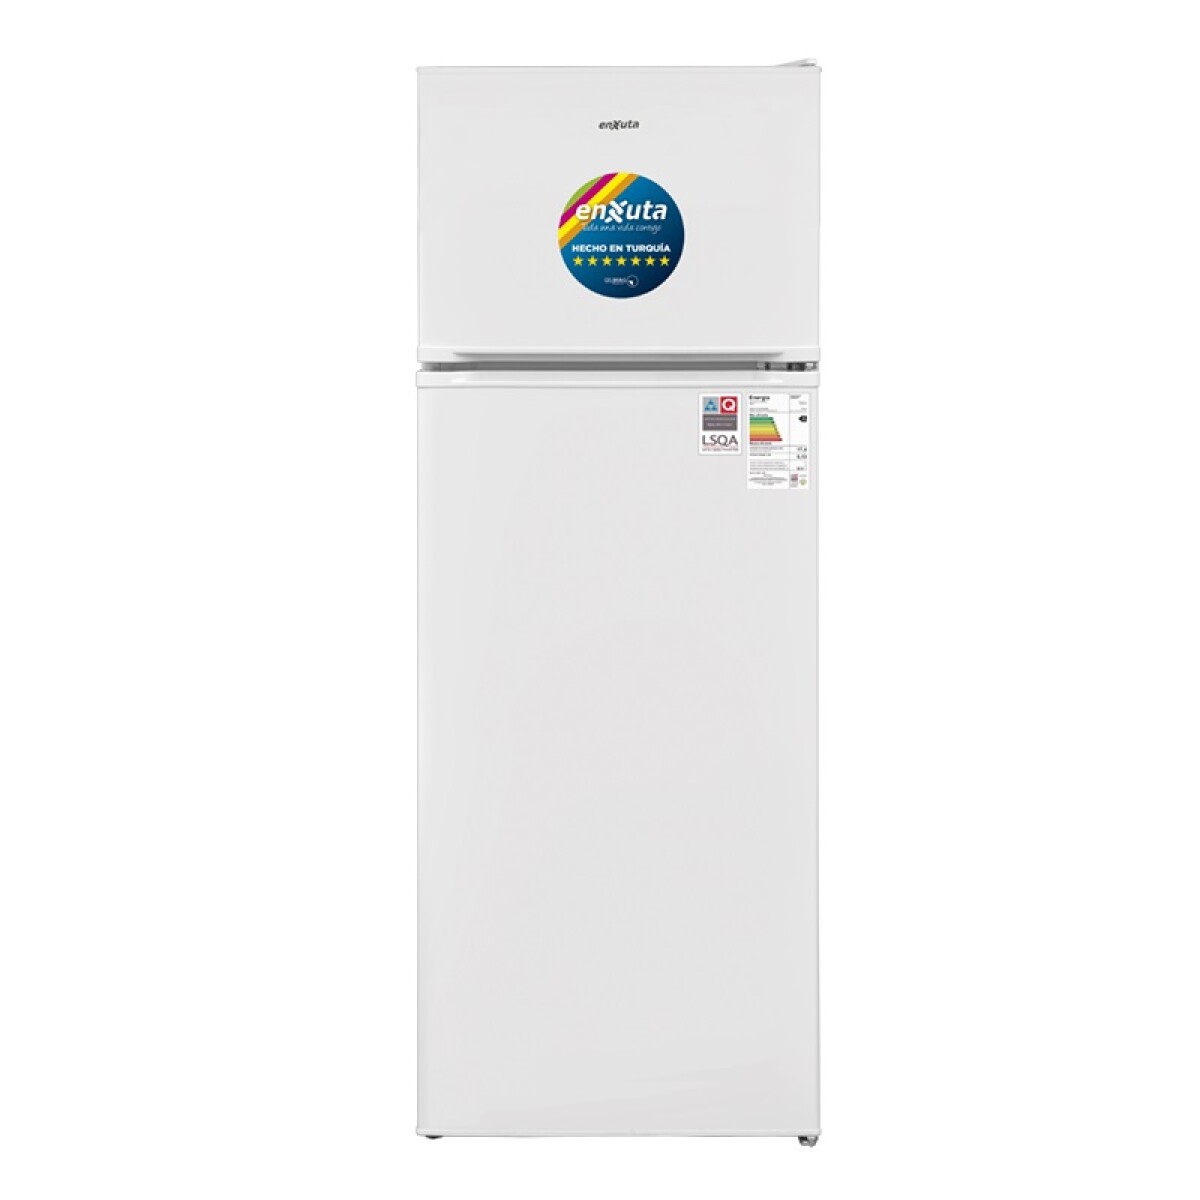 Refrigerador Enxuta Renx14-215fhw 